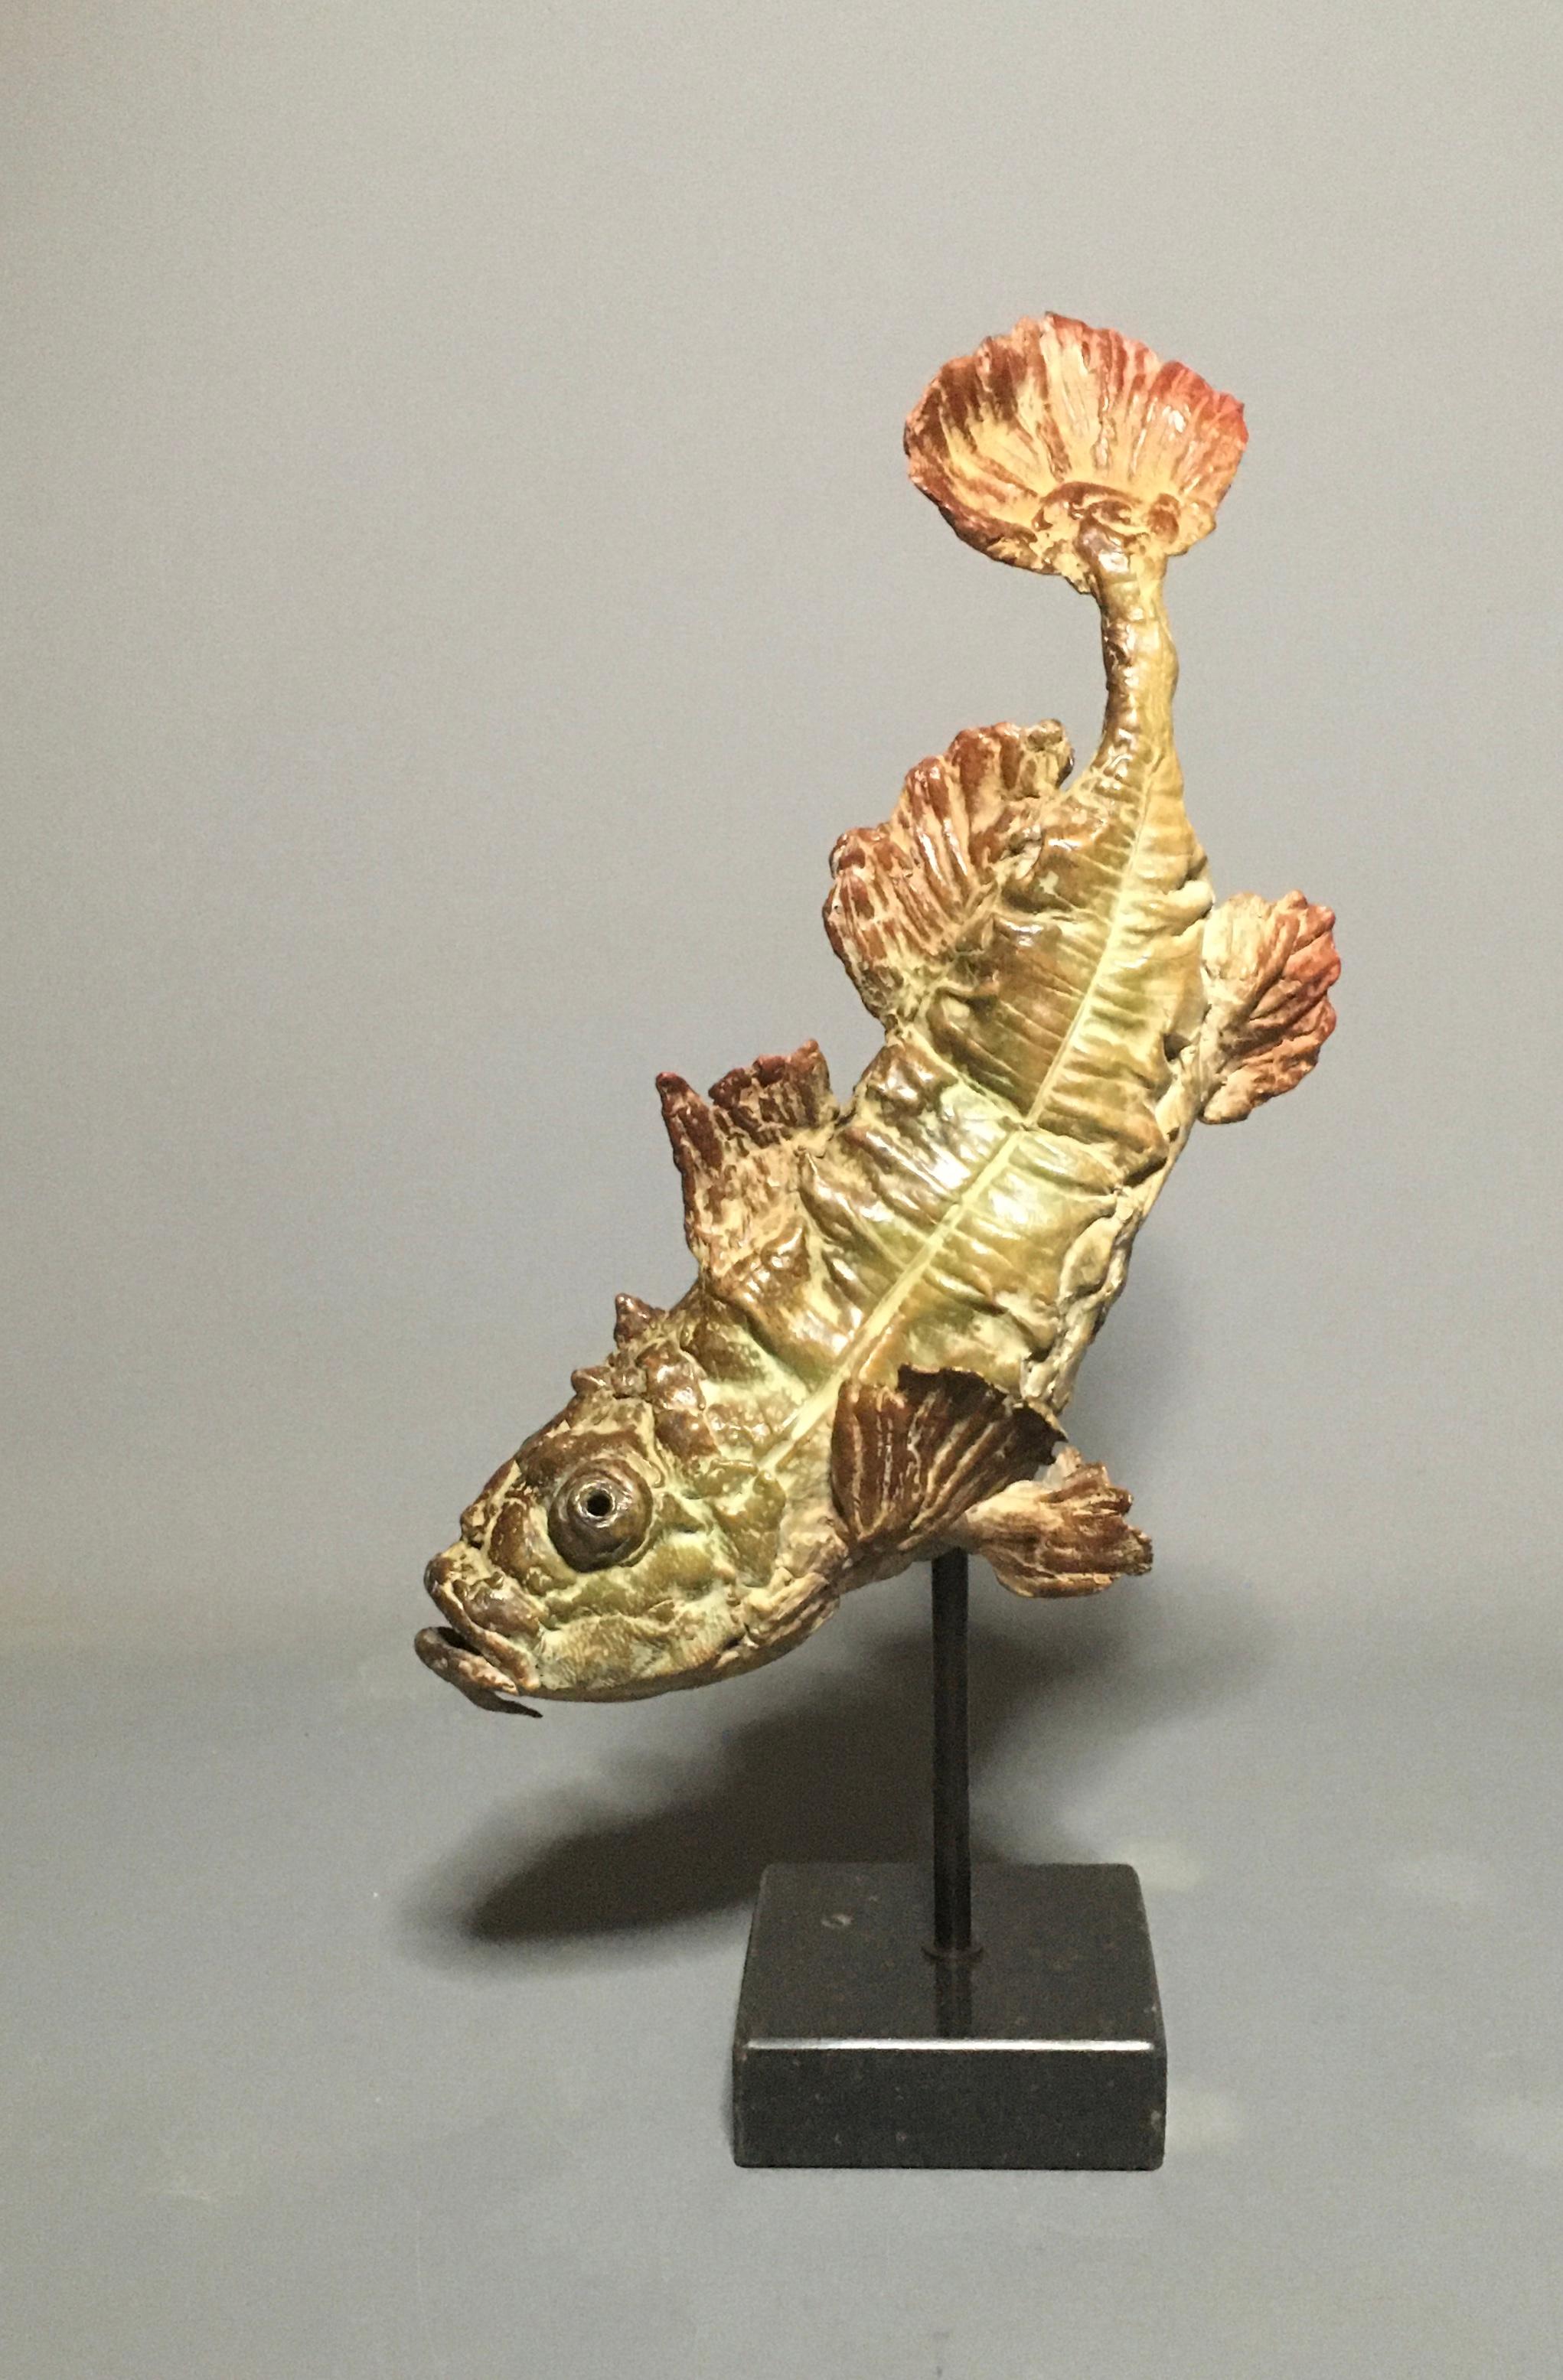 Pieter Vanden Daele Figurative Sculpture - Reytus Bronze Sculpture Fish Animal Water Contemporary In Stock 